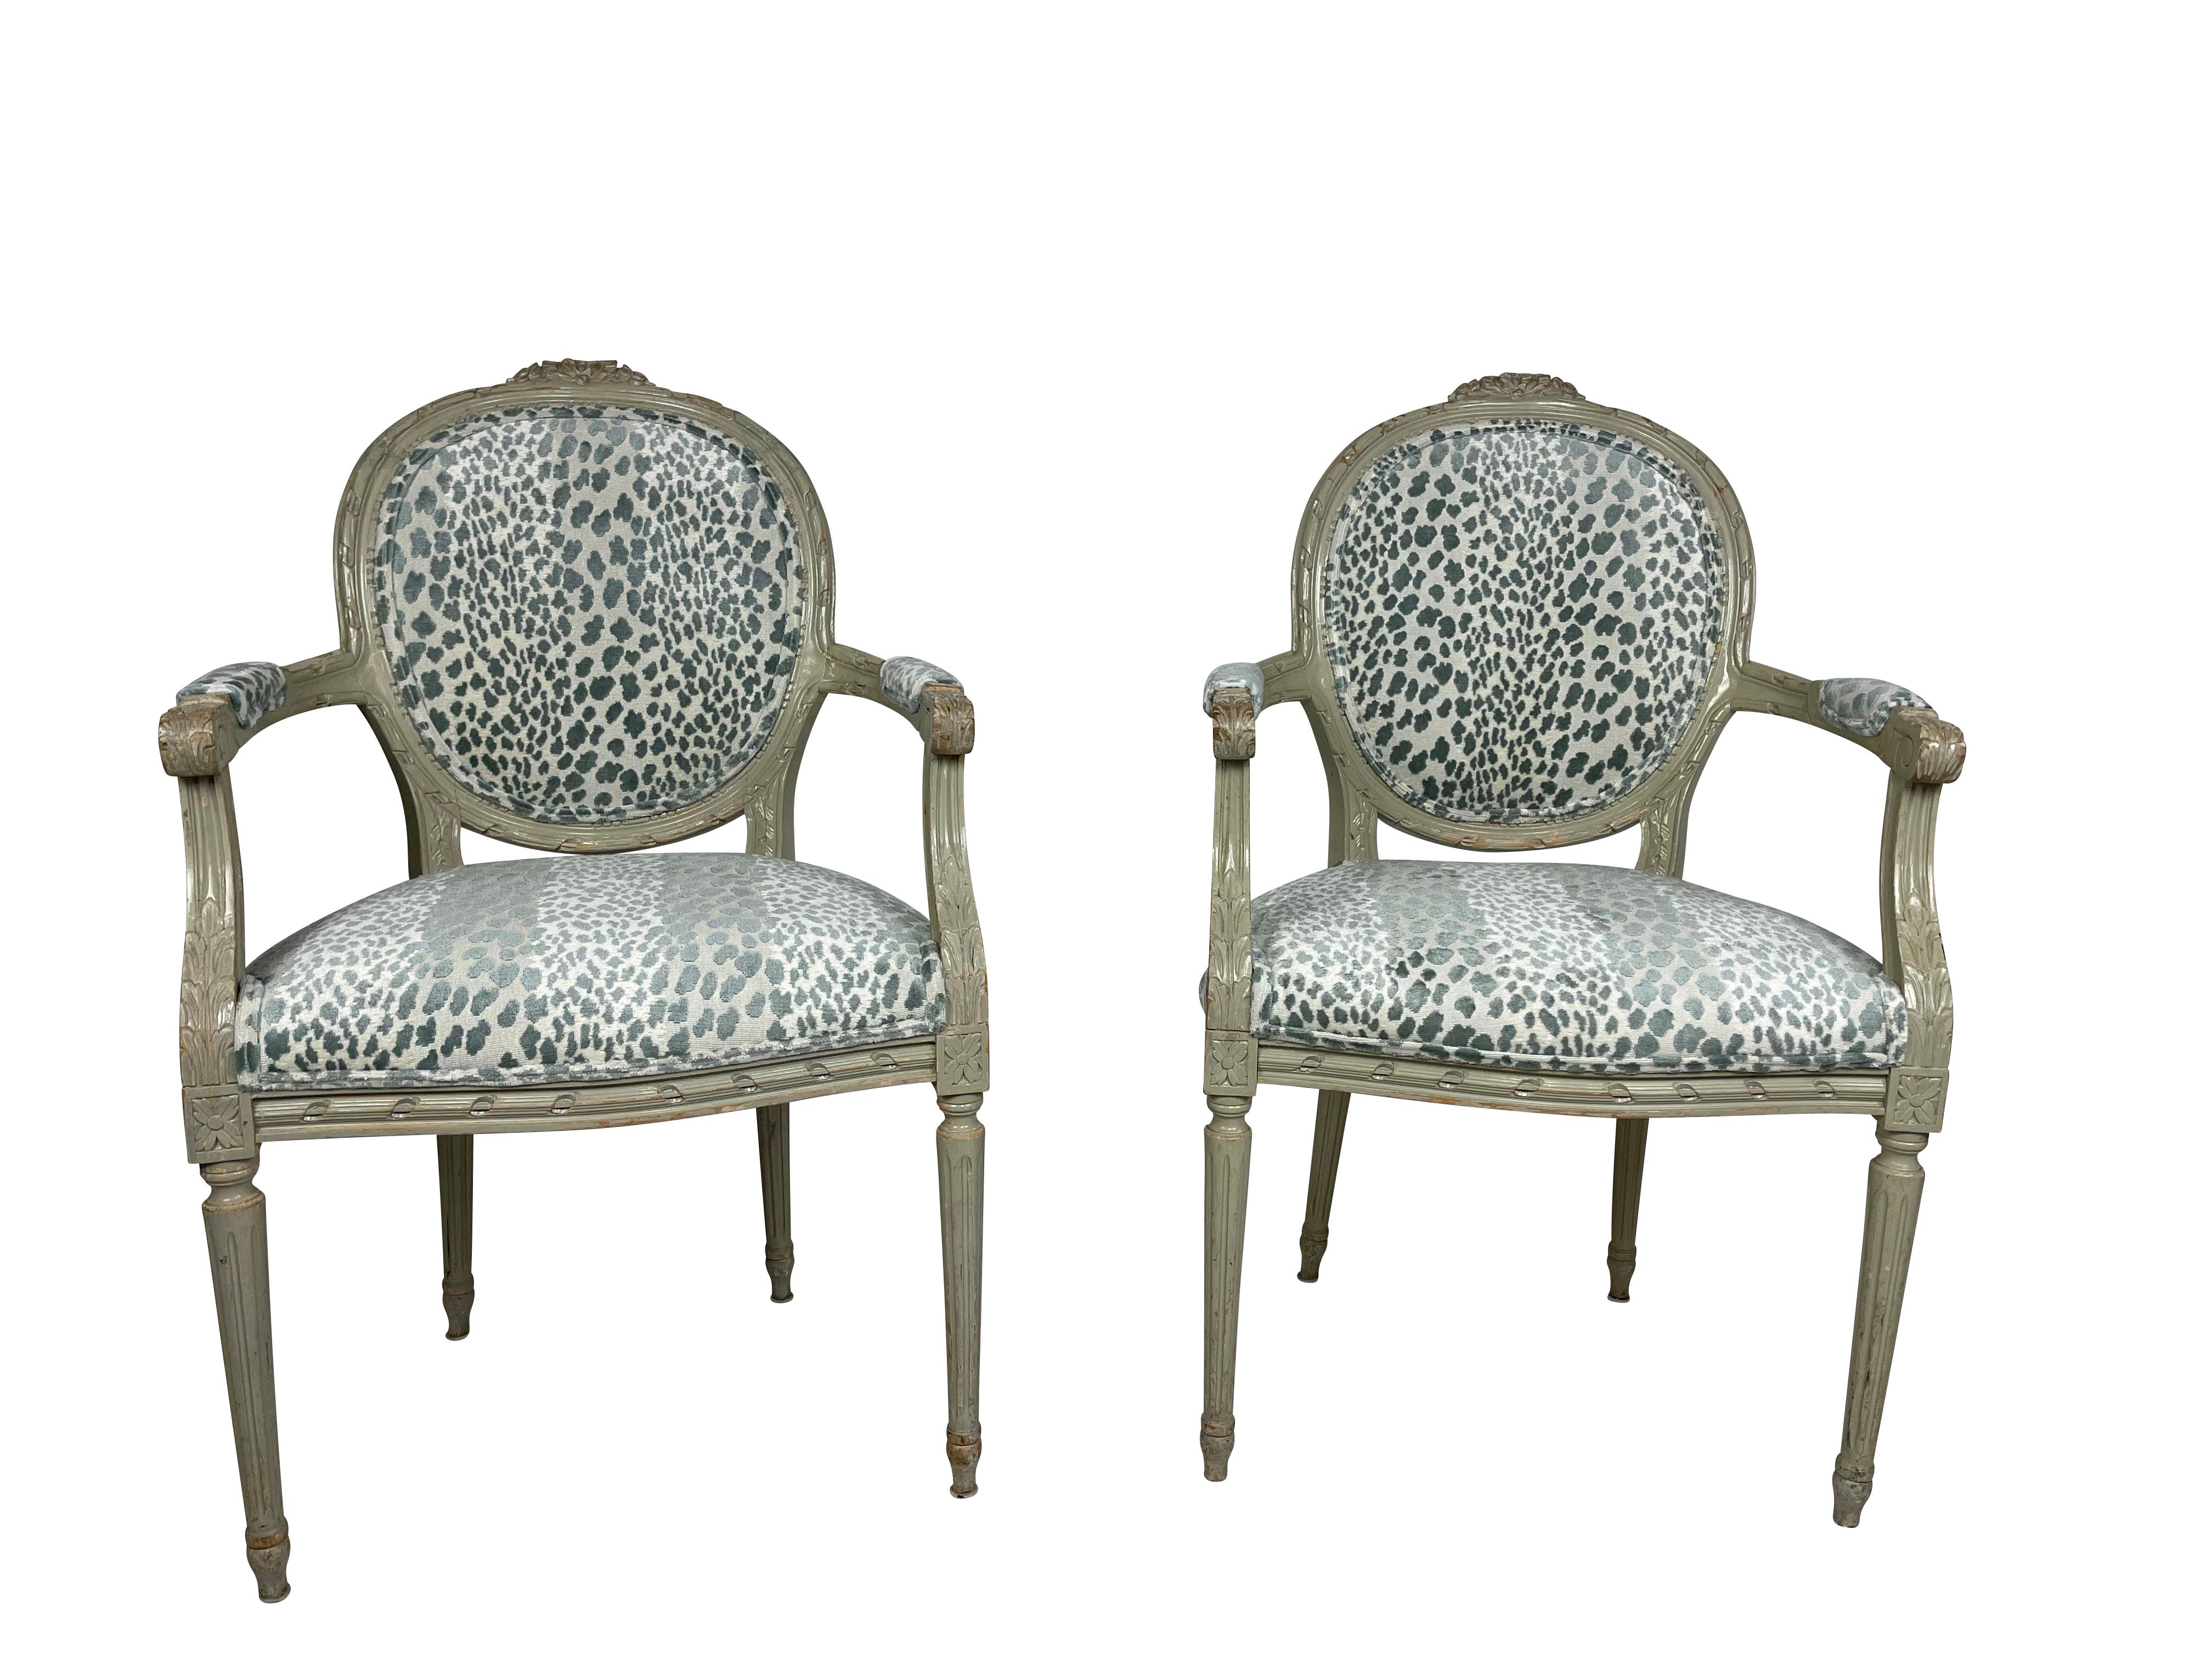 Ces charmants fauteuils Louis XVI peints en gris/vert sont d'origine de l'hôtel Waldorf Astoria vers 1930-1940. Ils ont été restaurés avec amour et recouverts d'un velours imprimé animal bleu/vert. Ils sont joliment sculptés de motifs floraux et de